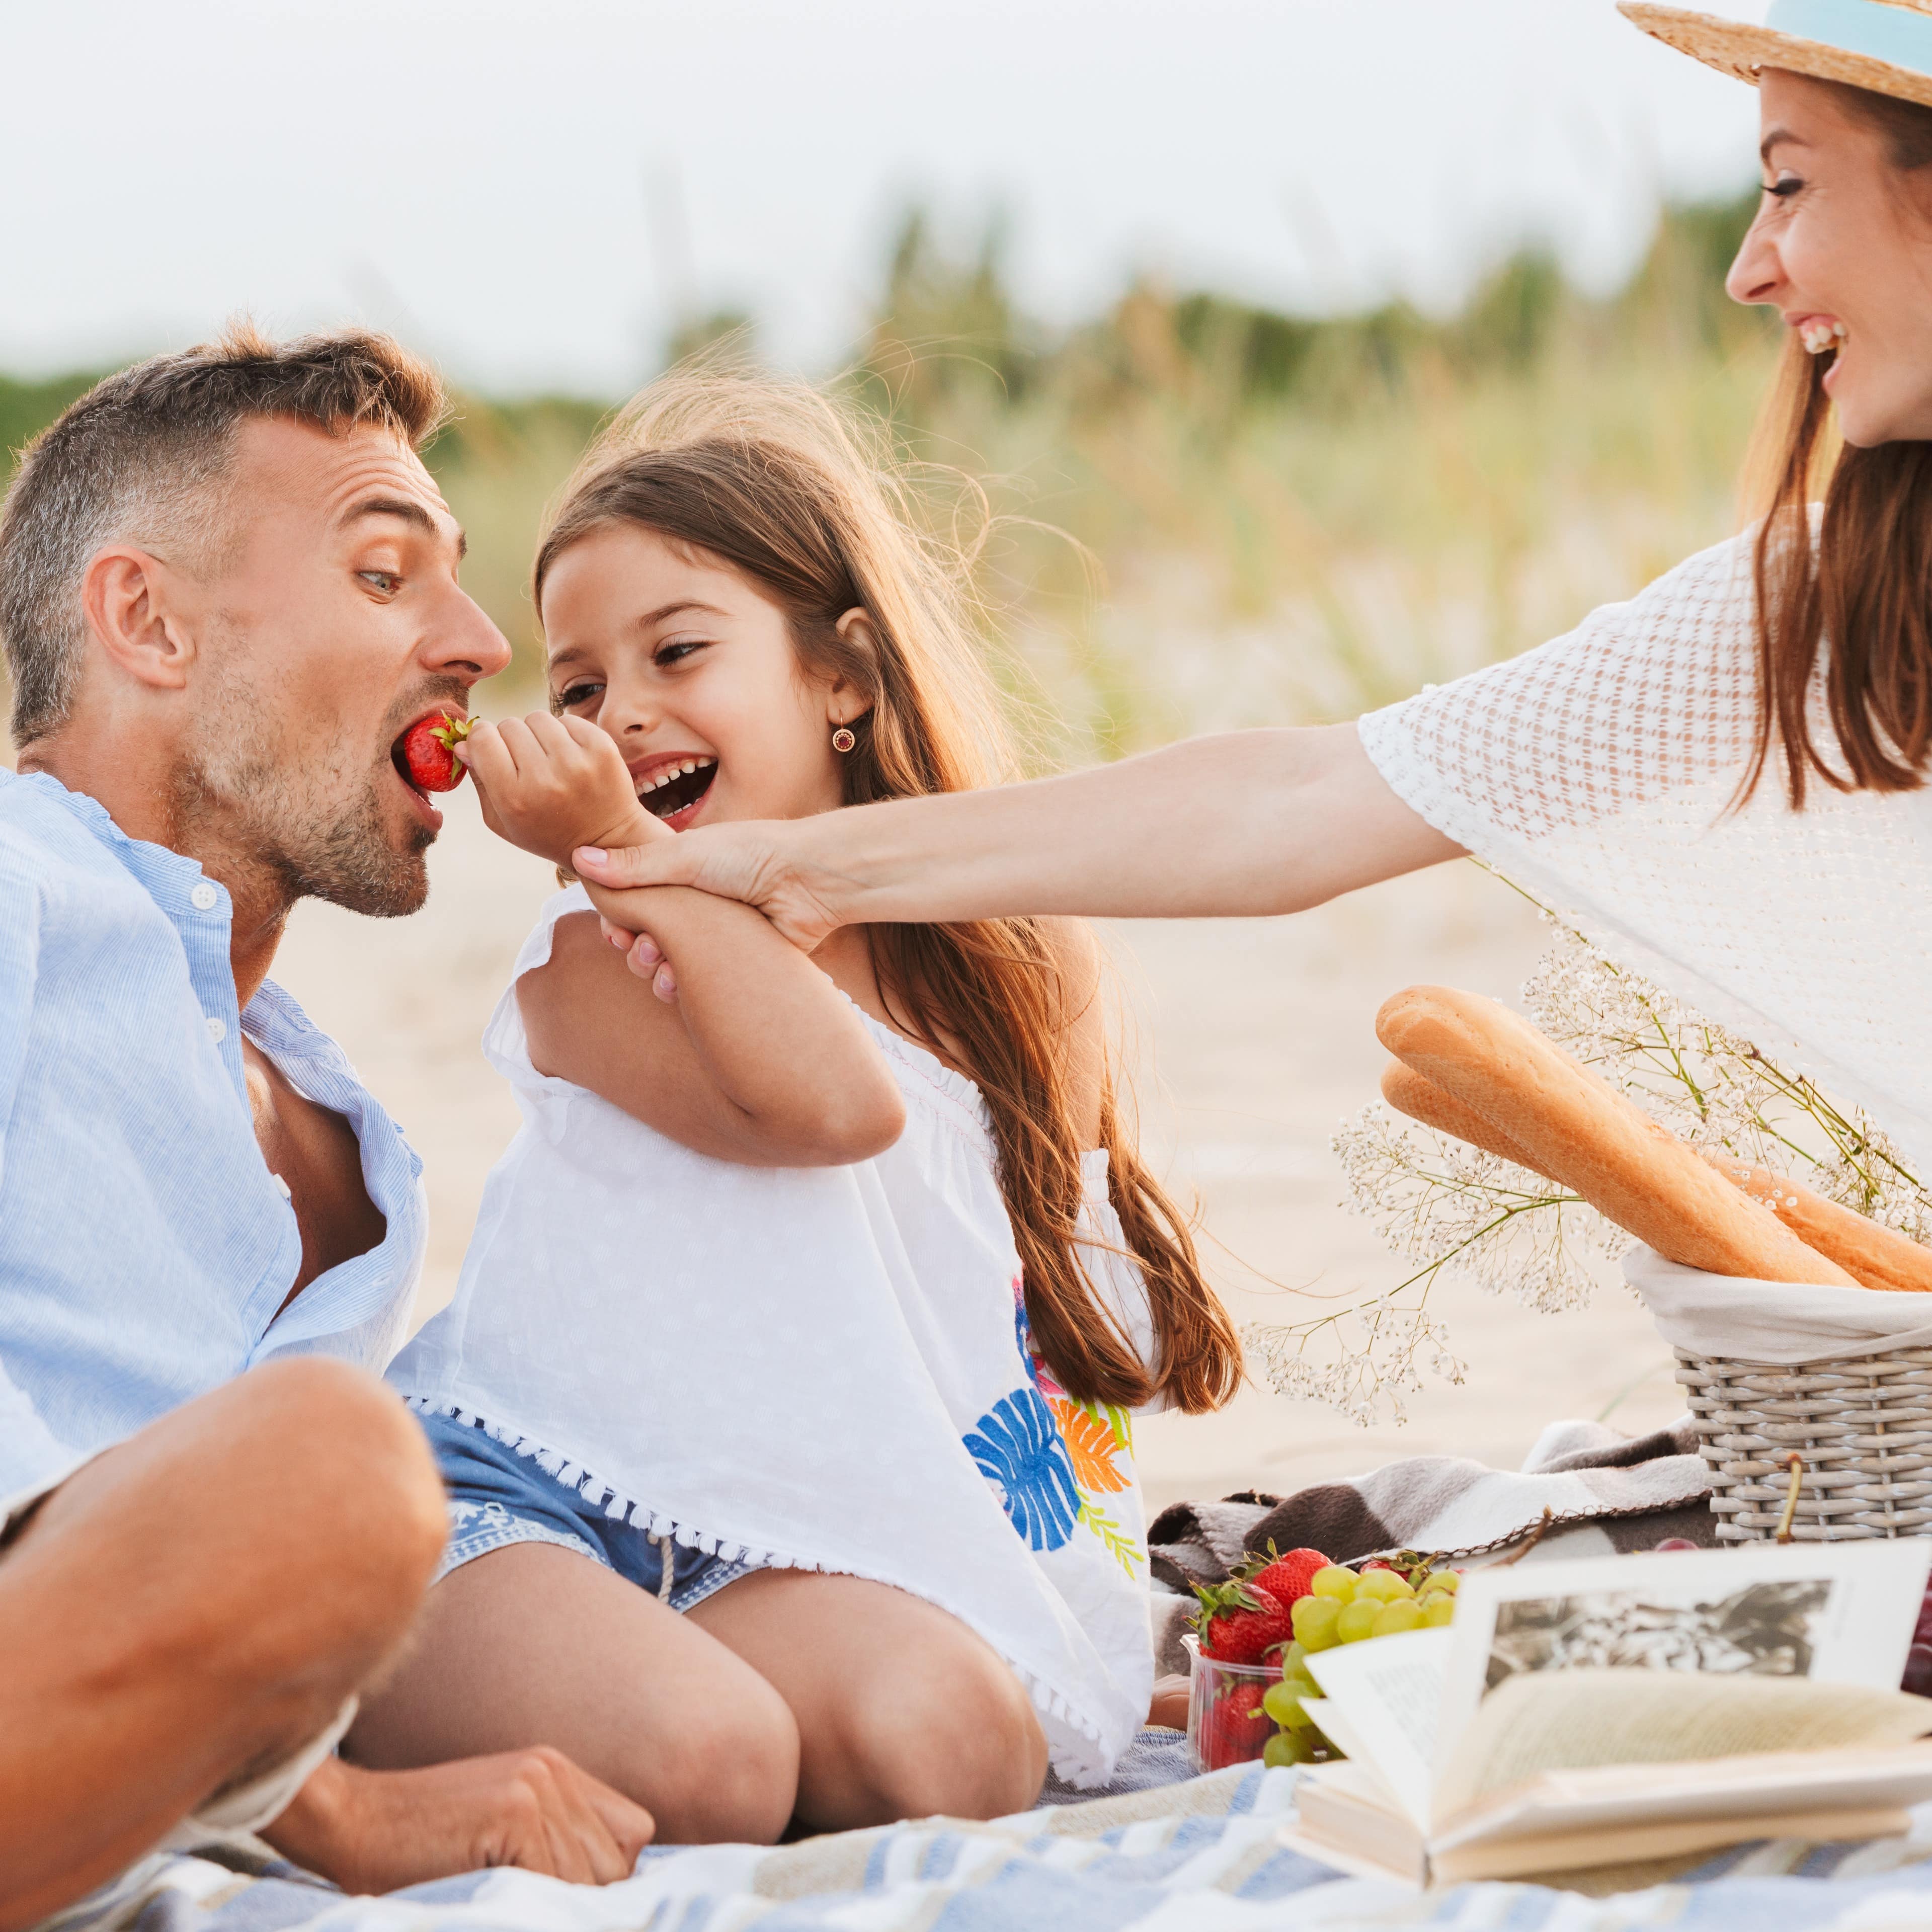 Picknick am Strand: Mutter und Tochter füttern den Vater mit einer Erdbeere.